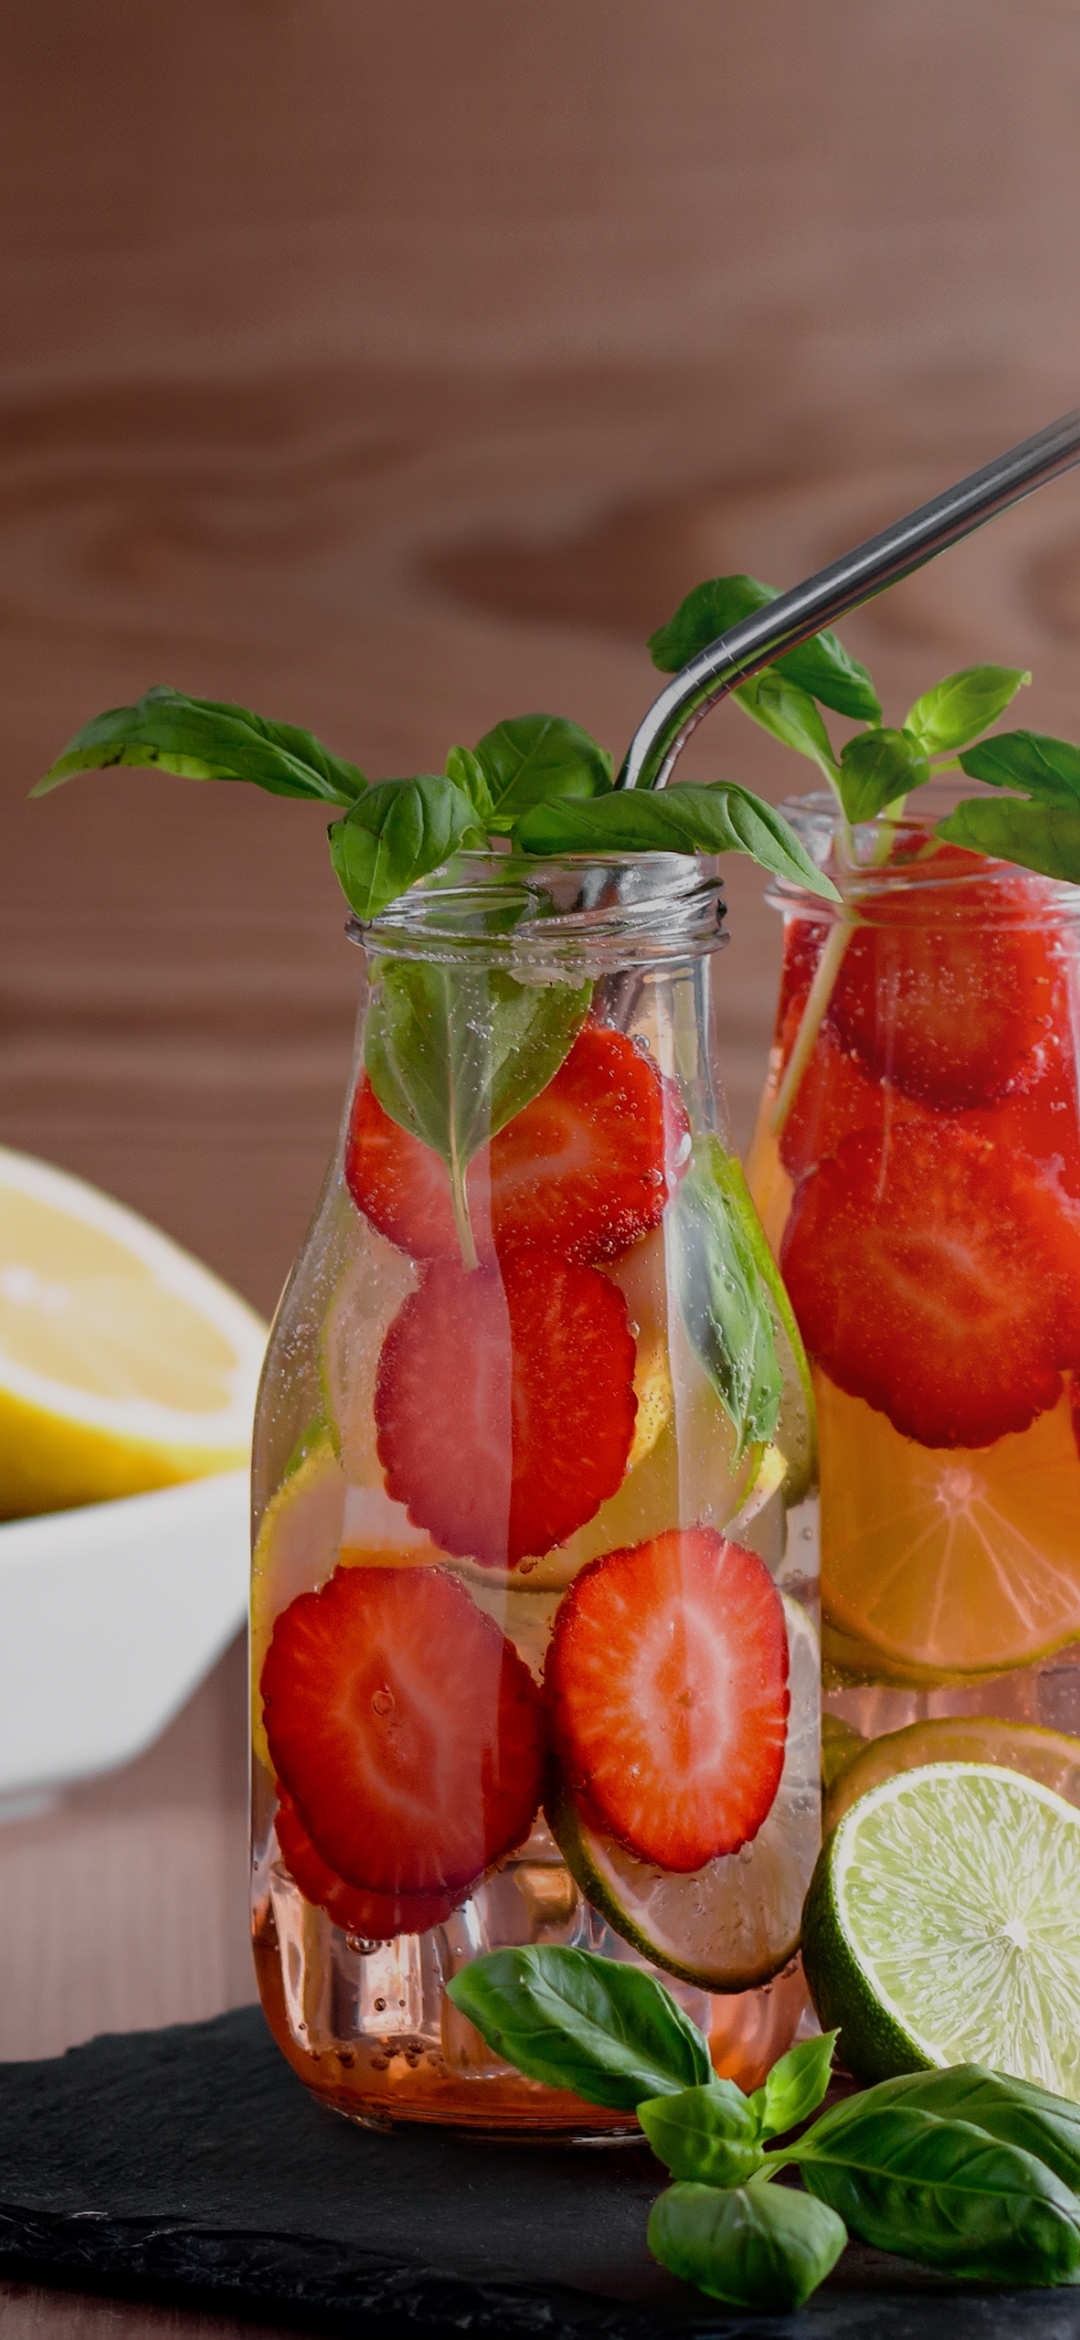 Strawberry in bottle